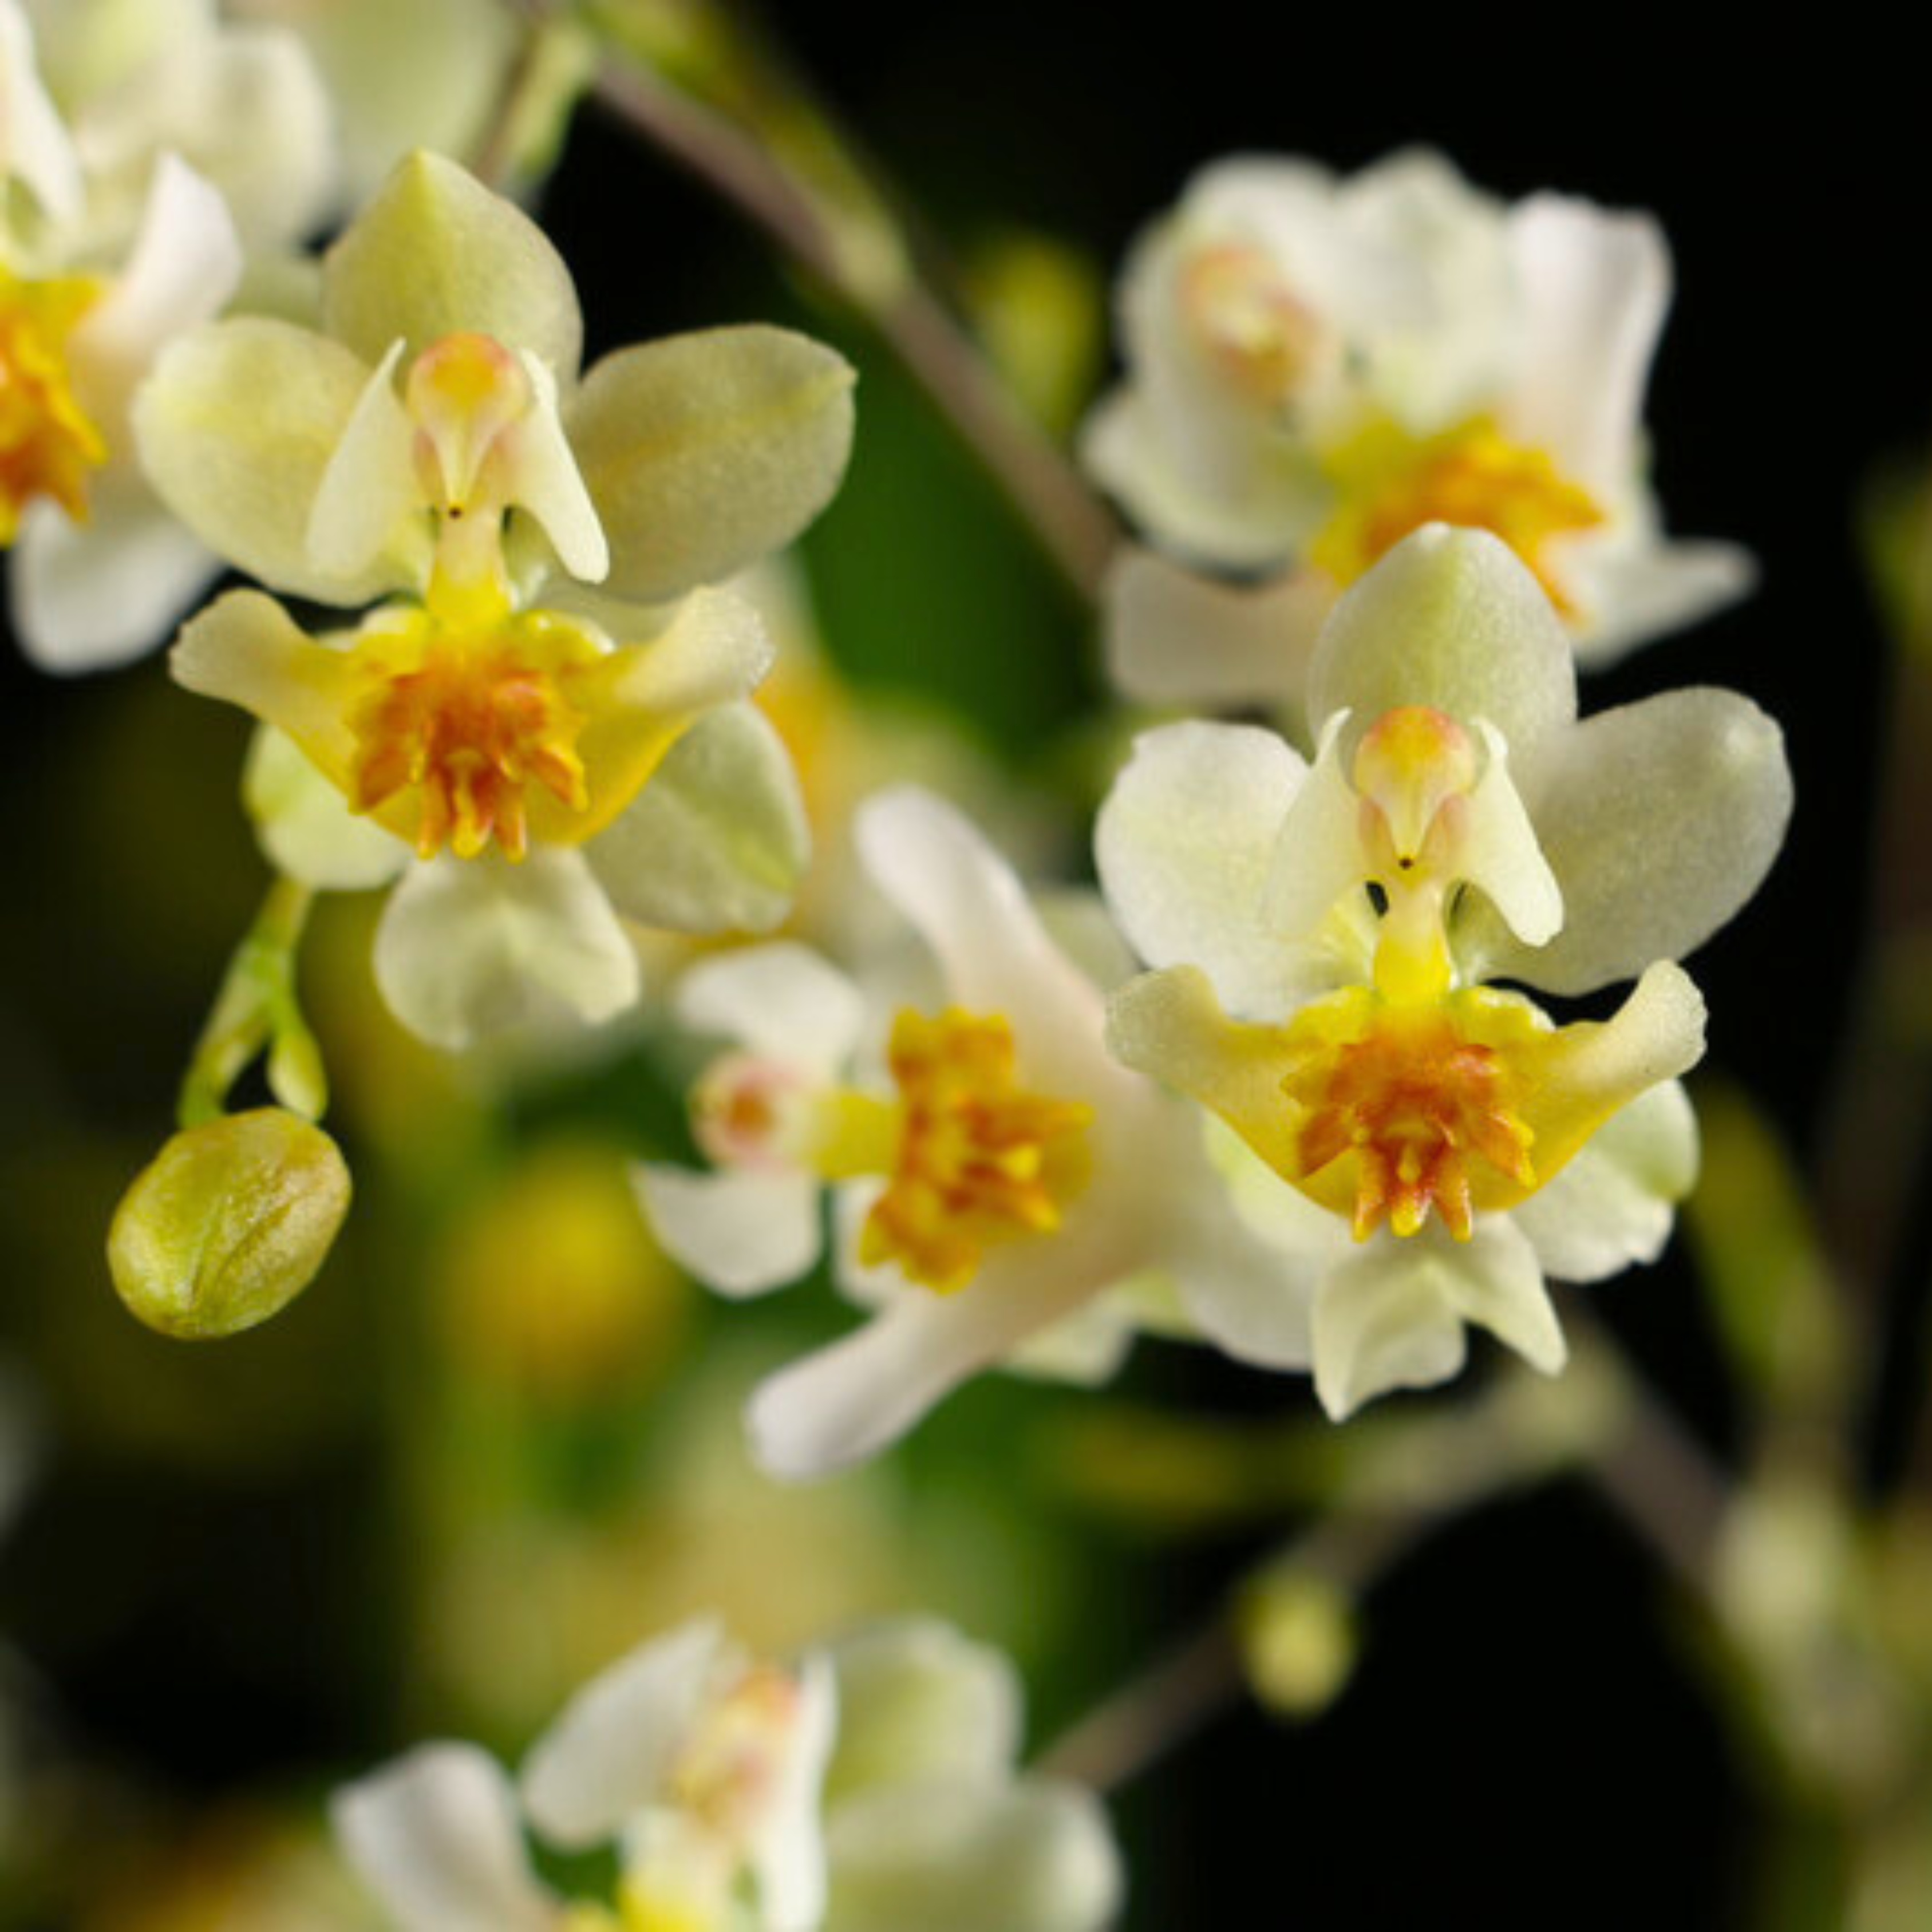 Oncidium Twinkle White (Extra Big Size Bushy Plant)